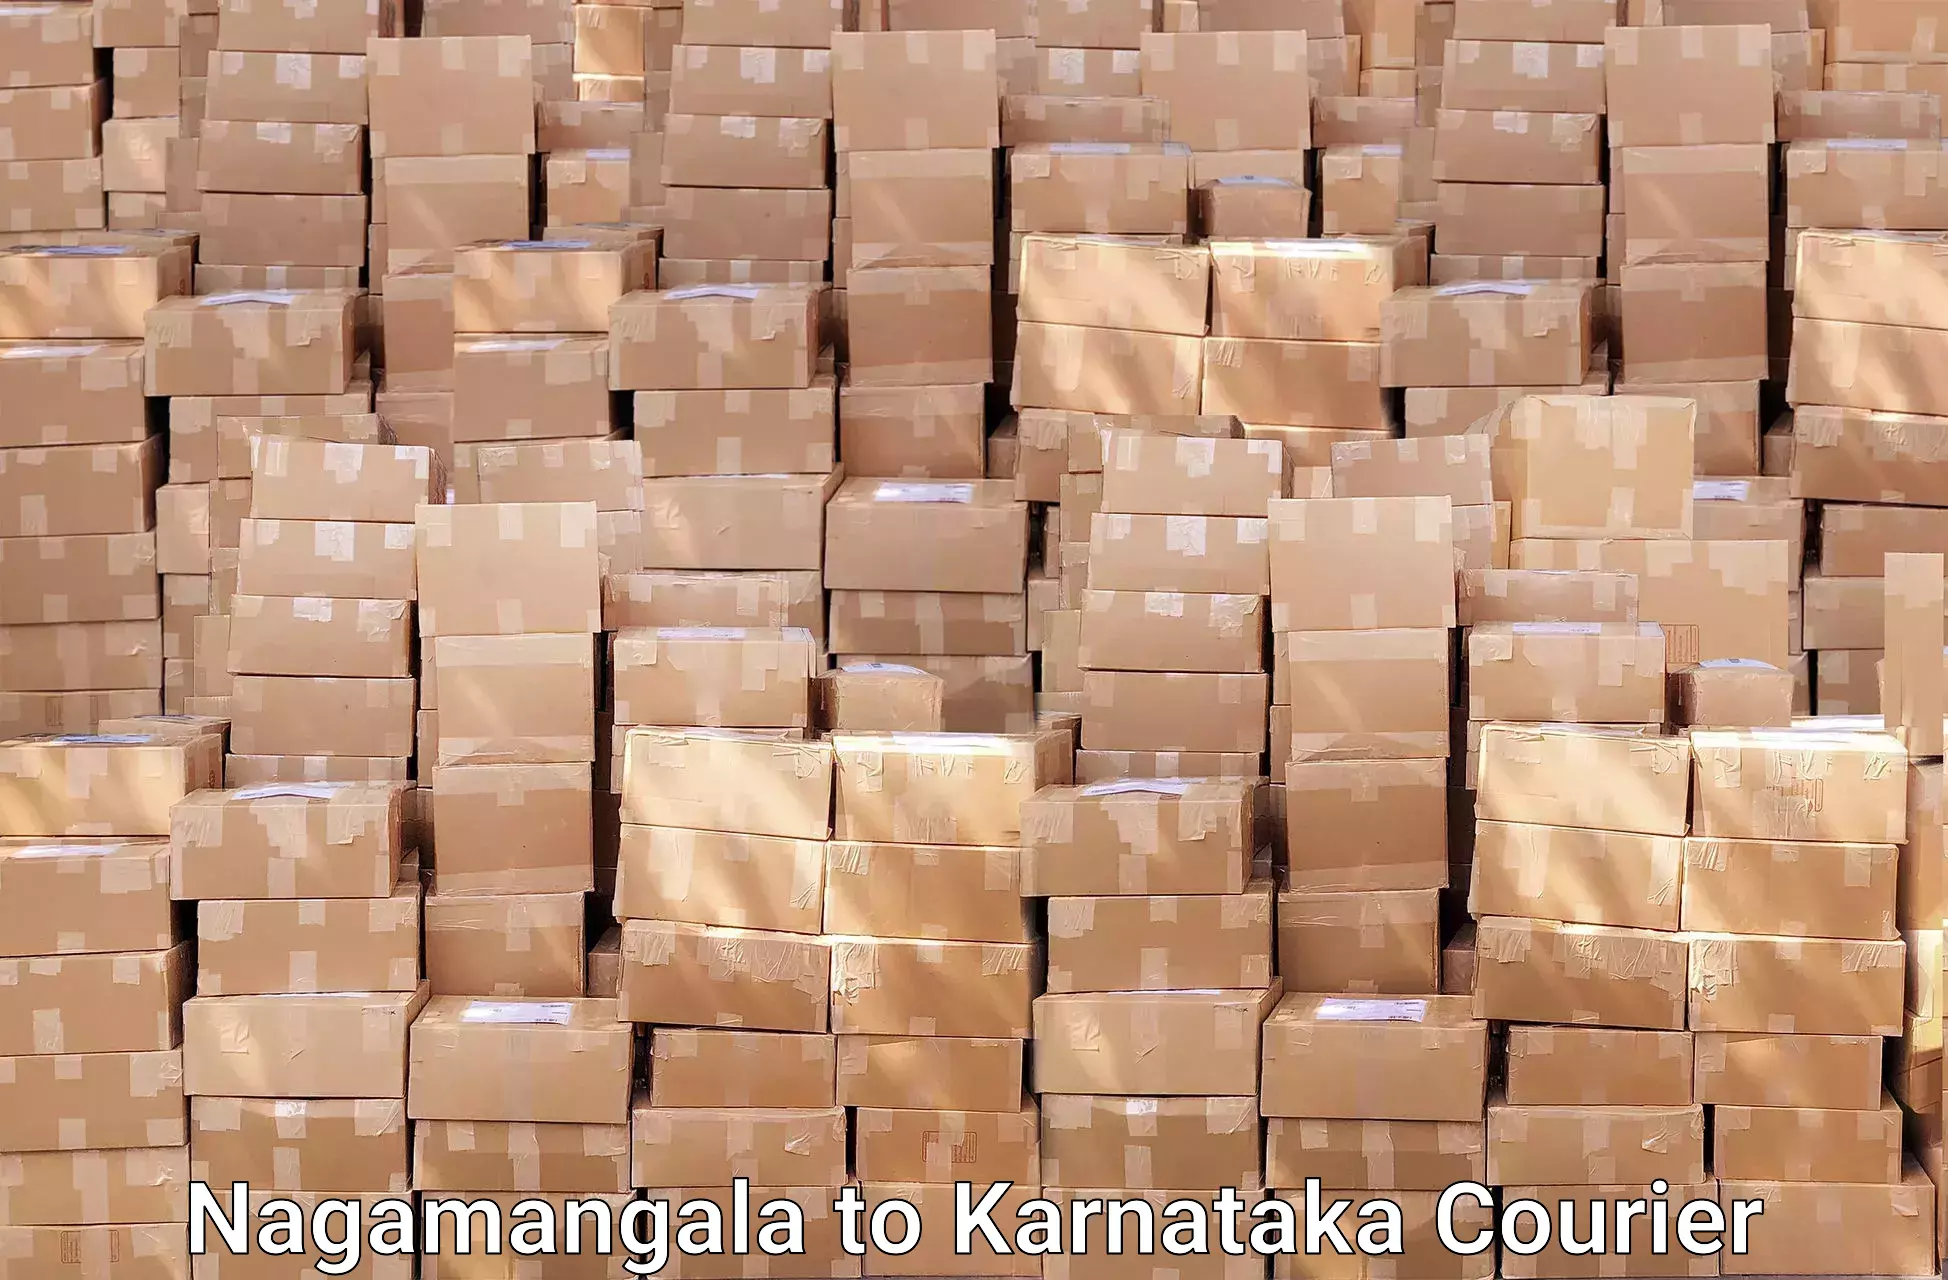 Furniture moving specialists Nagamangala to Kulshekar